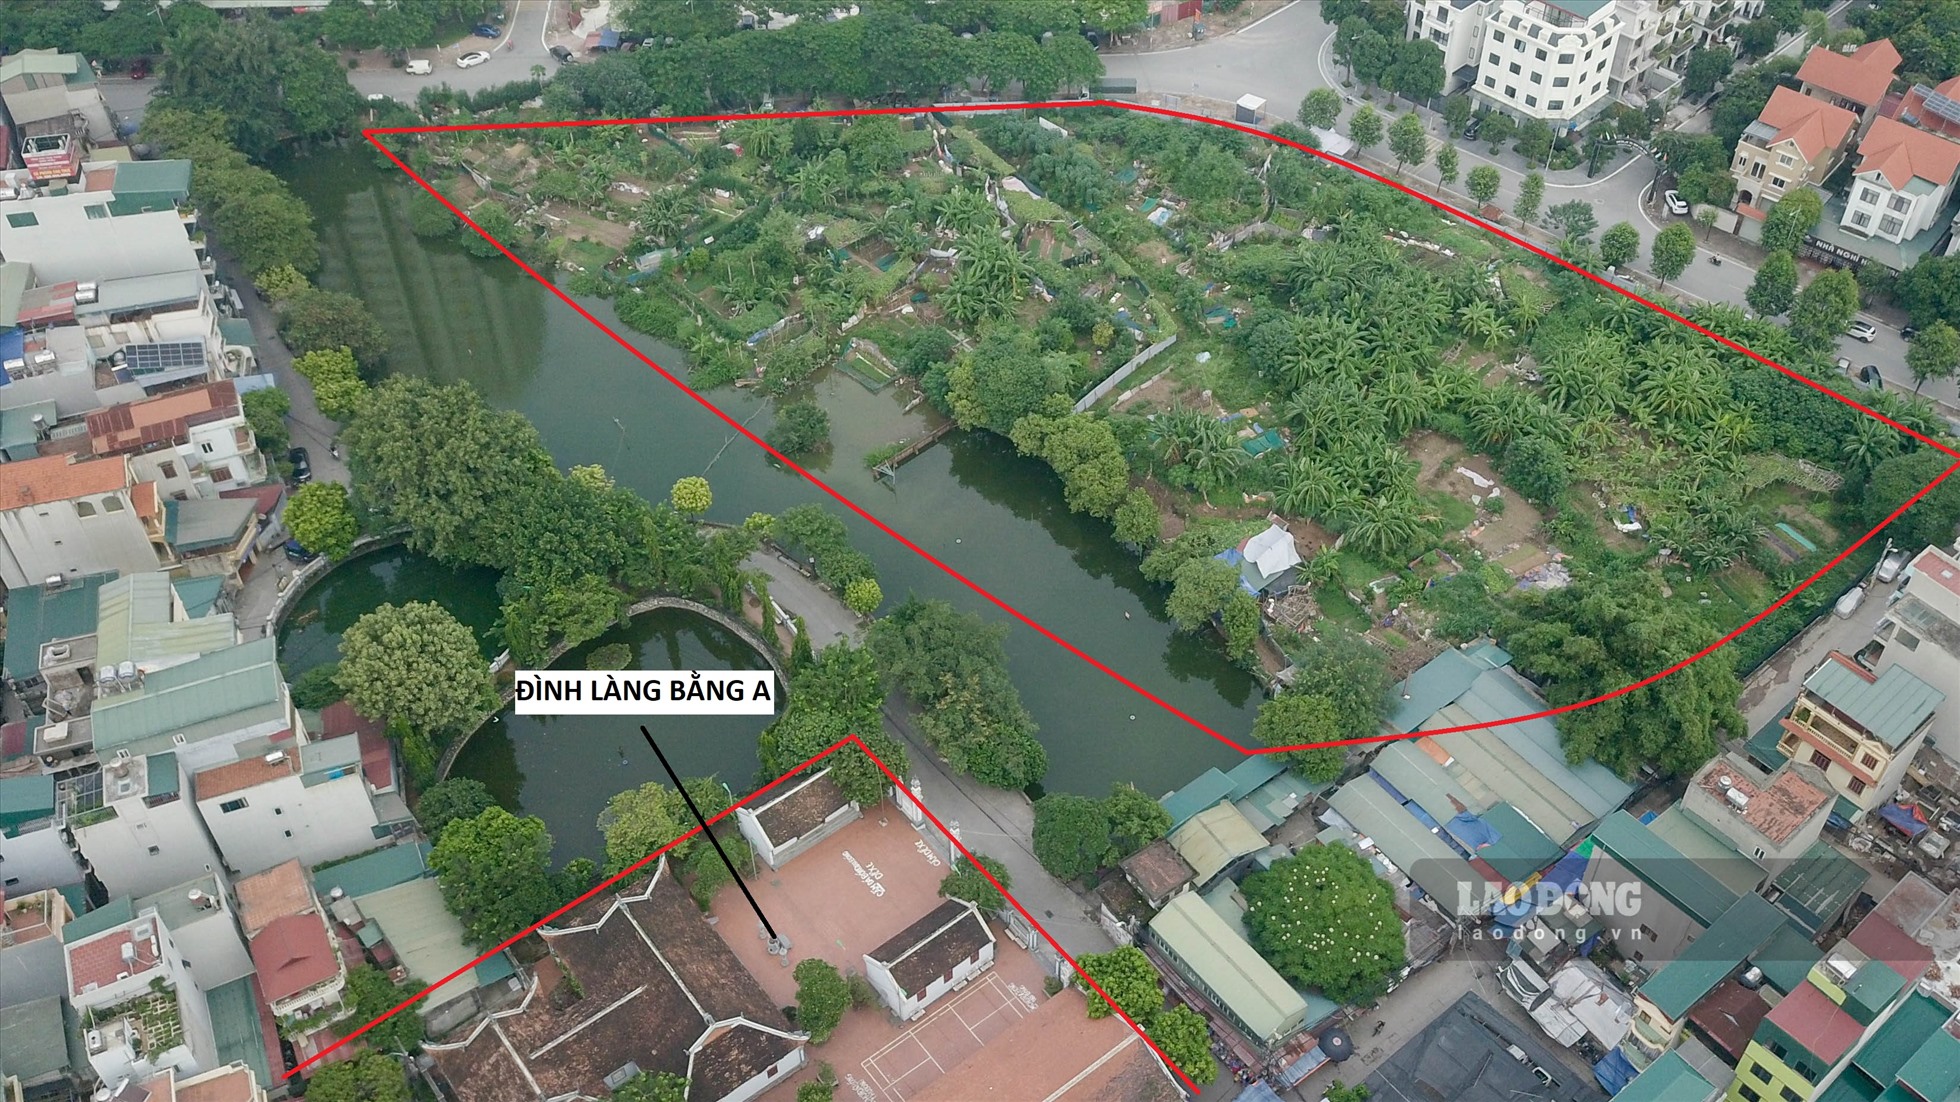 Khu đất tiếp giáp với đường Bùi Quốc Khải và ao đình làng Bằng A thuộc phường Hoàng Liệt được quy hoạch xây trường học theo quy hoạch phân khu H2-3.